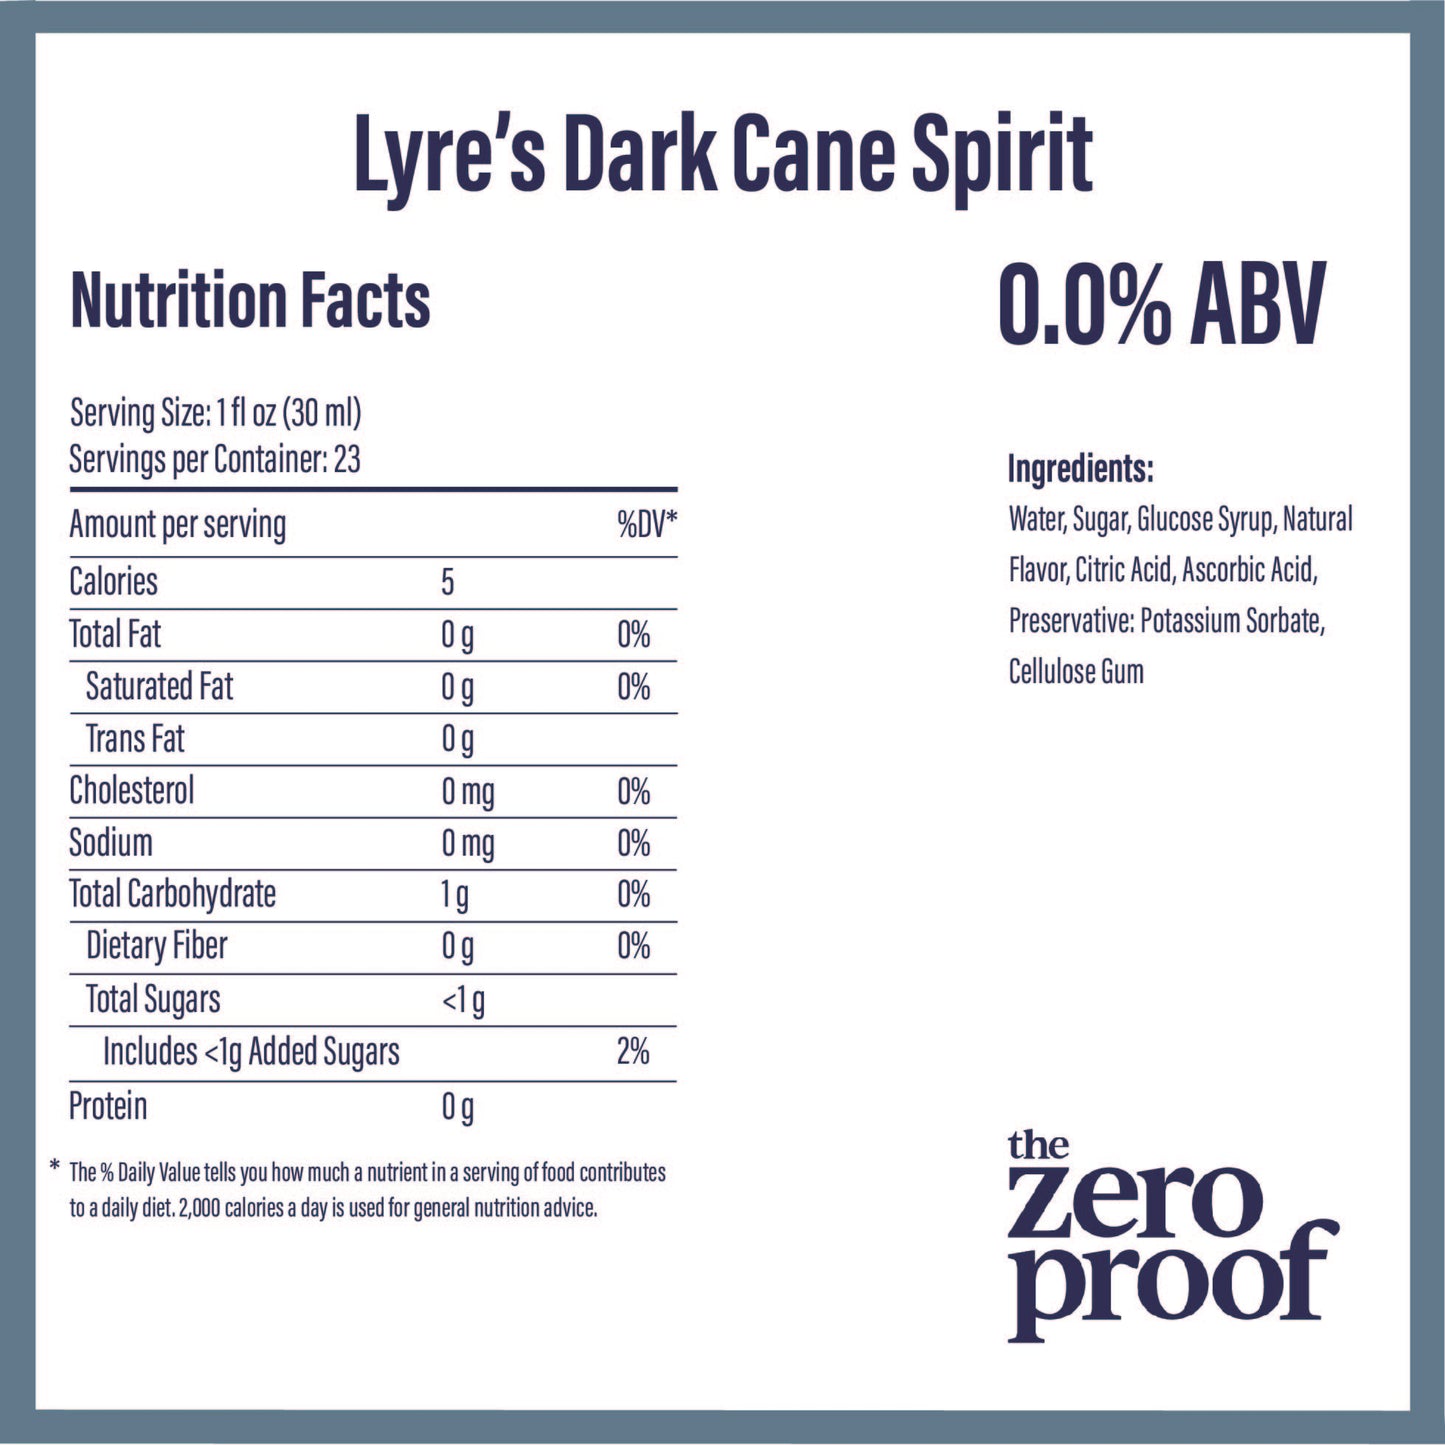 Lyre’s Dark Cane Spirit